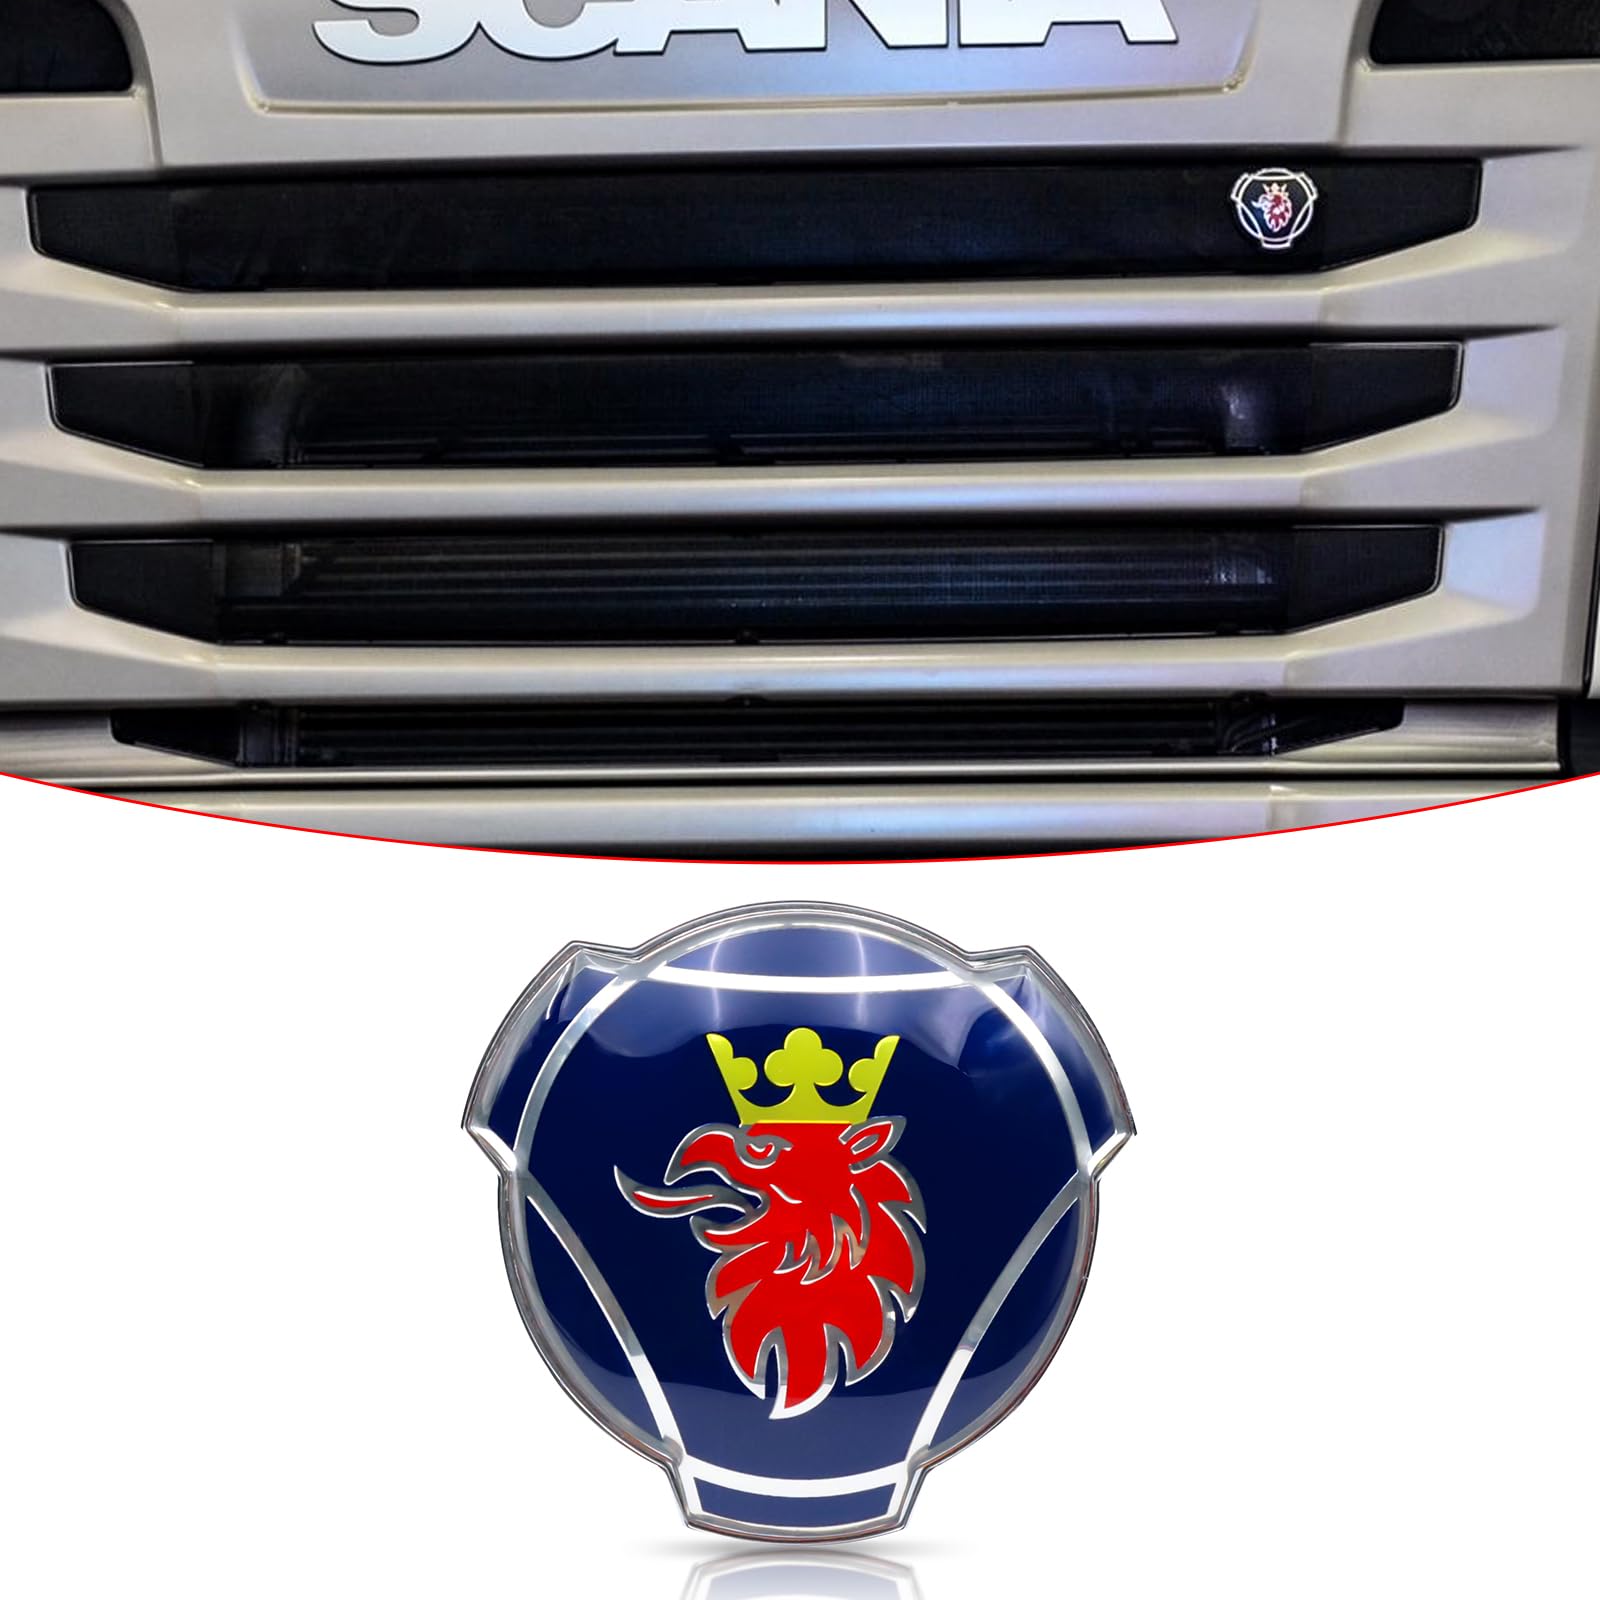 1 x blau-rotes Griffin-Logo für Scania Lkw Auto Frontgrill Motorhaube Emblem Abzeichen Aufkleber von FTC